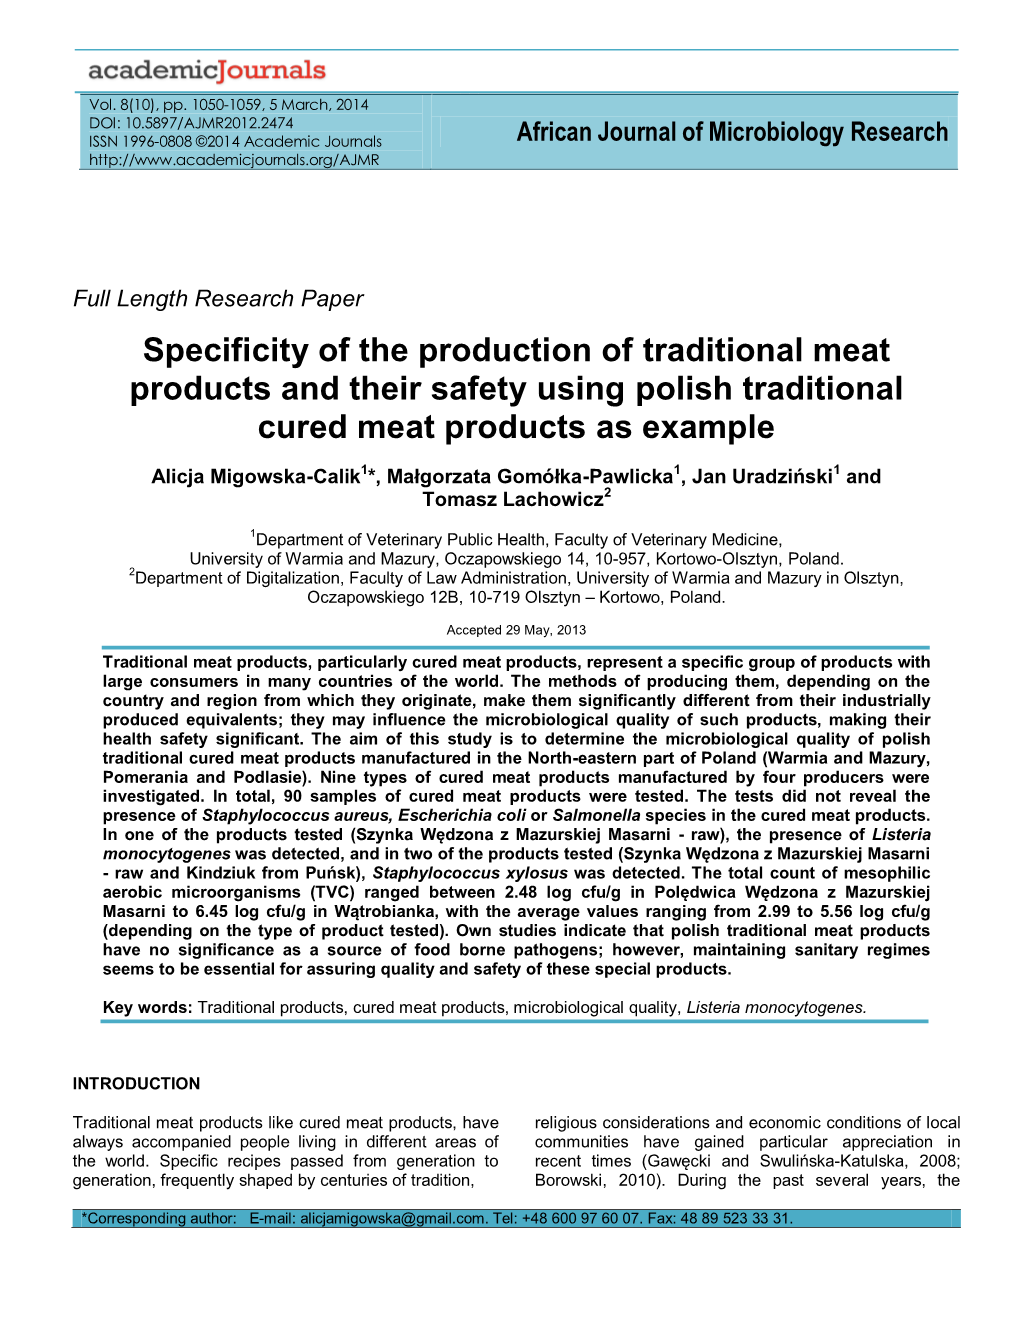 Specyfika Produkcji Tradycyjnych Produktów Mięsnych